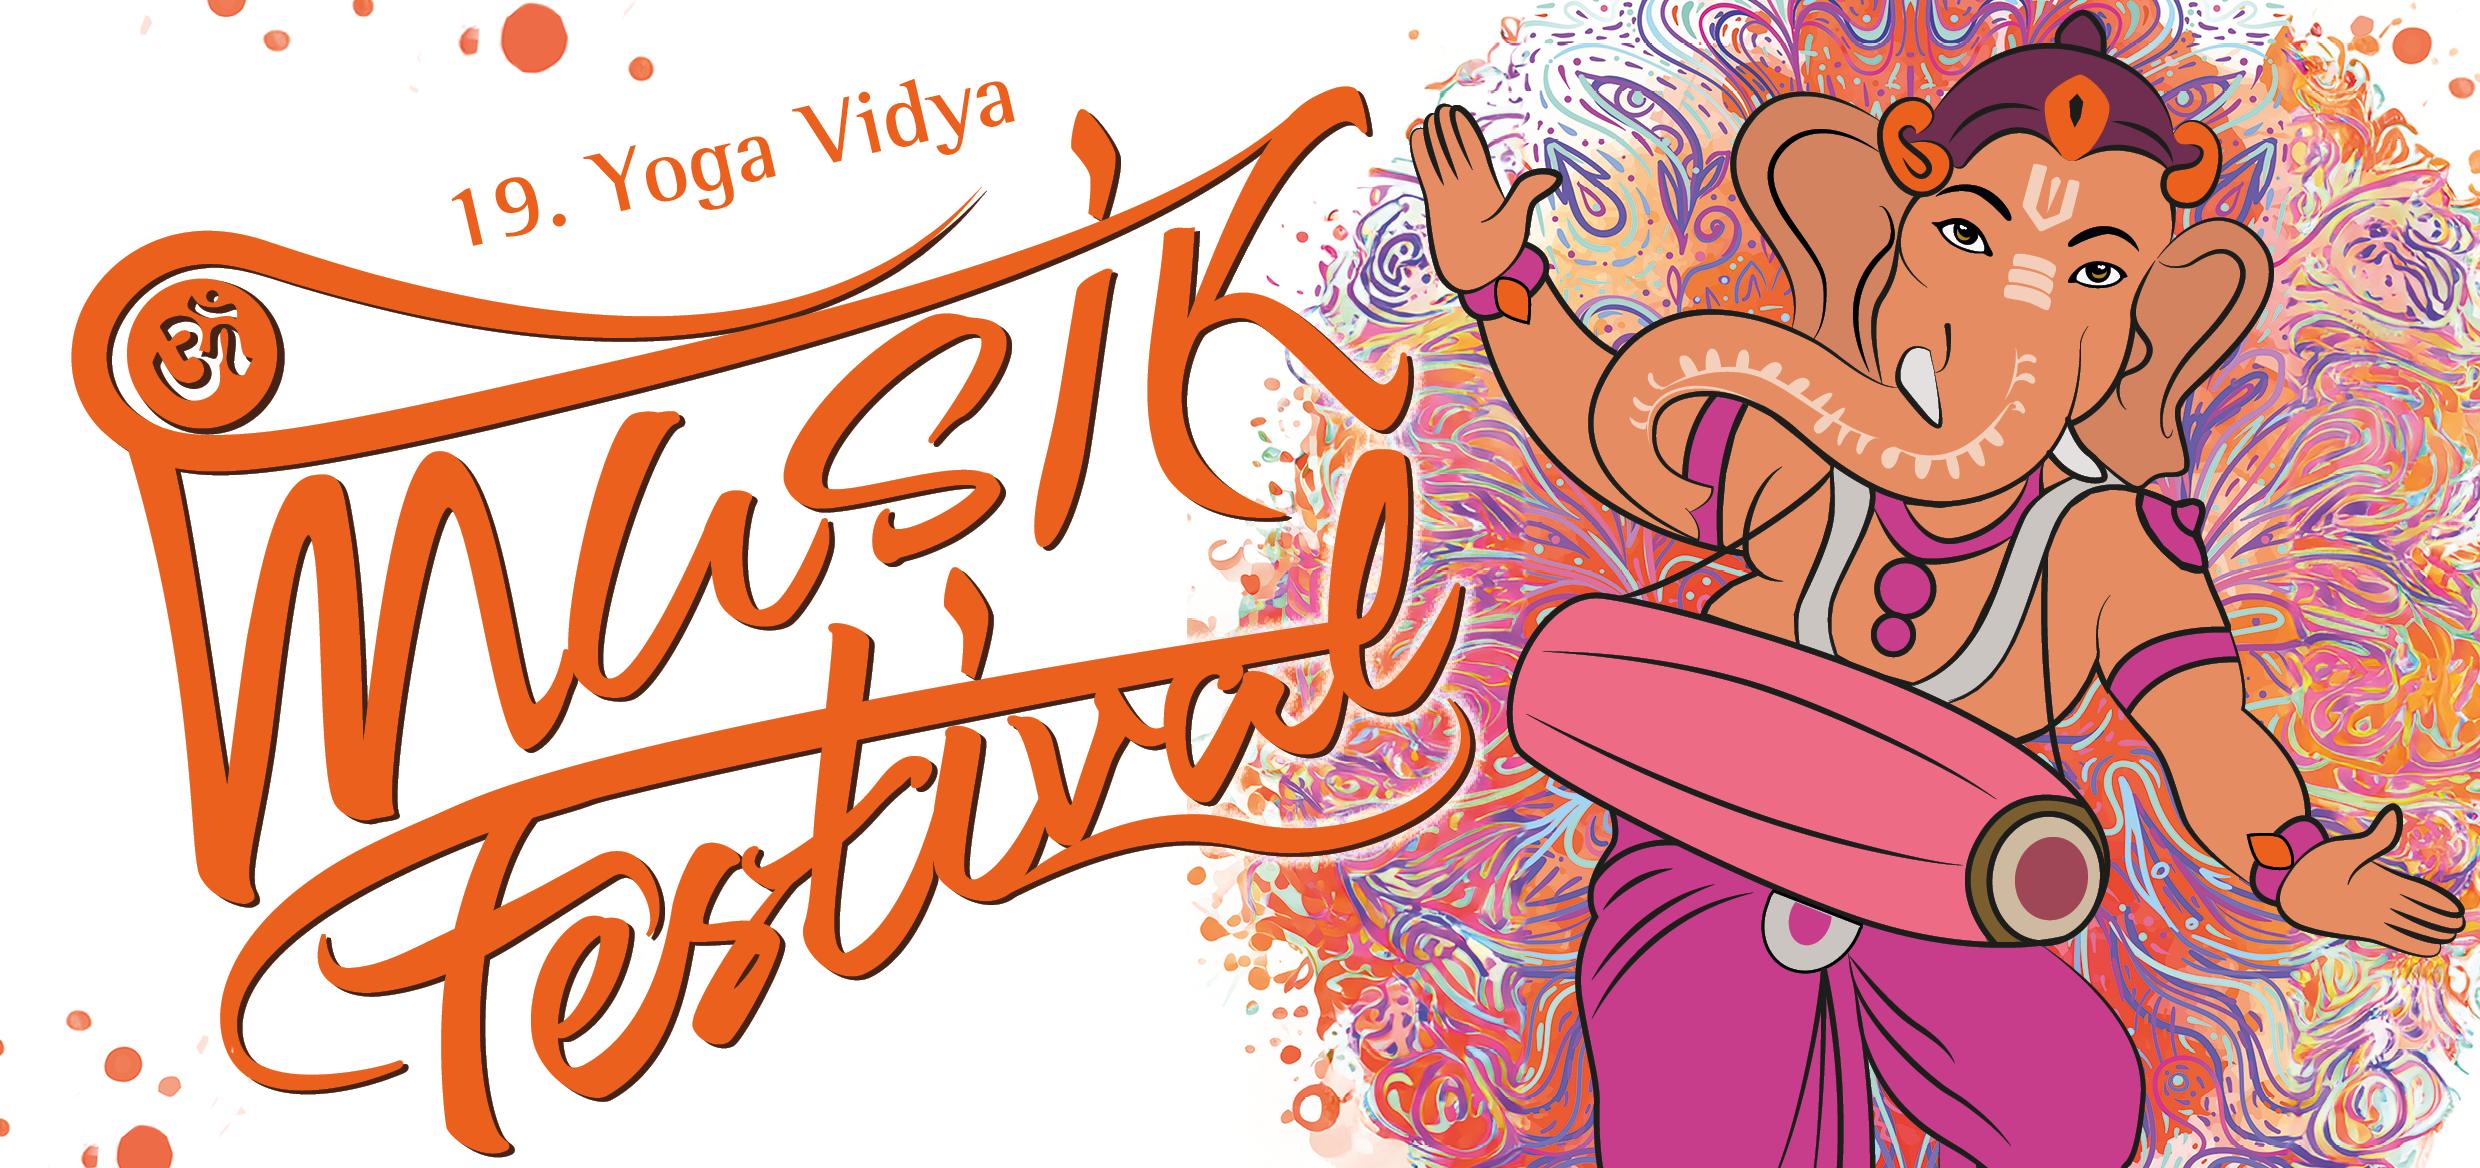 Plakat des 19. Yoga Musik Festivals mit Bild von Ganesha